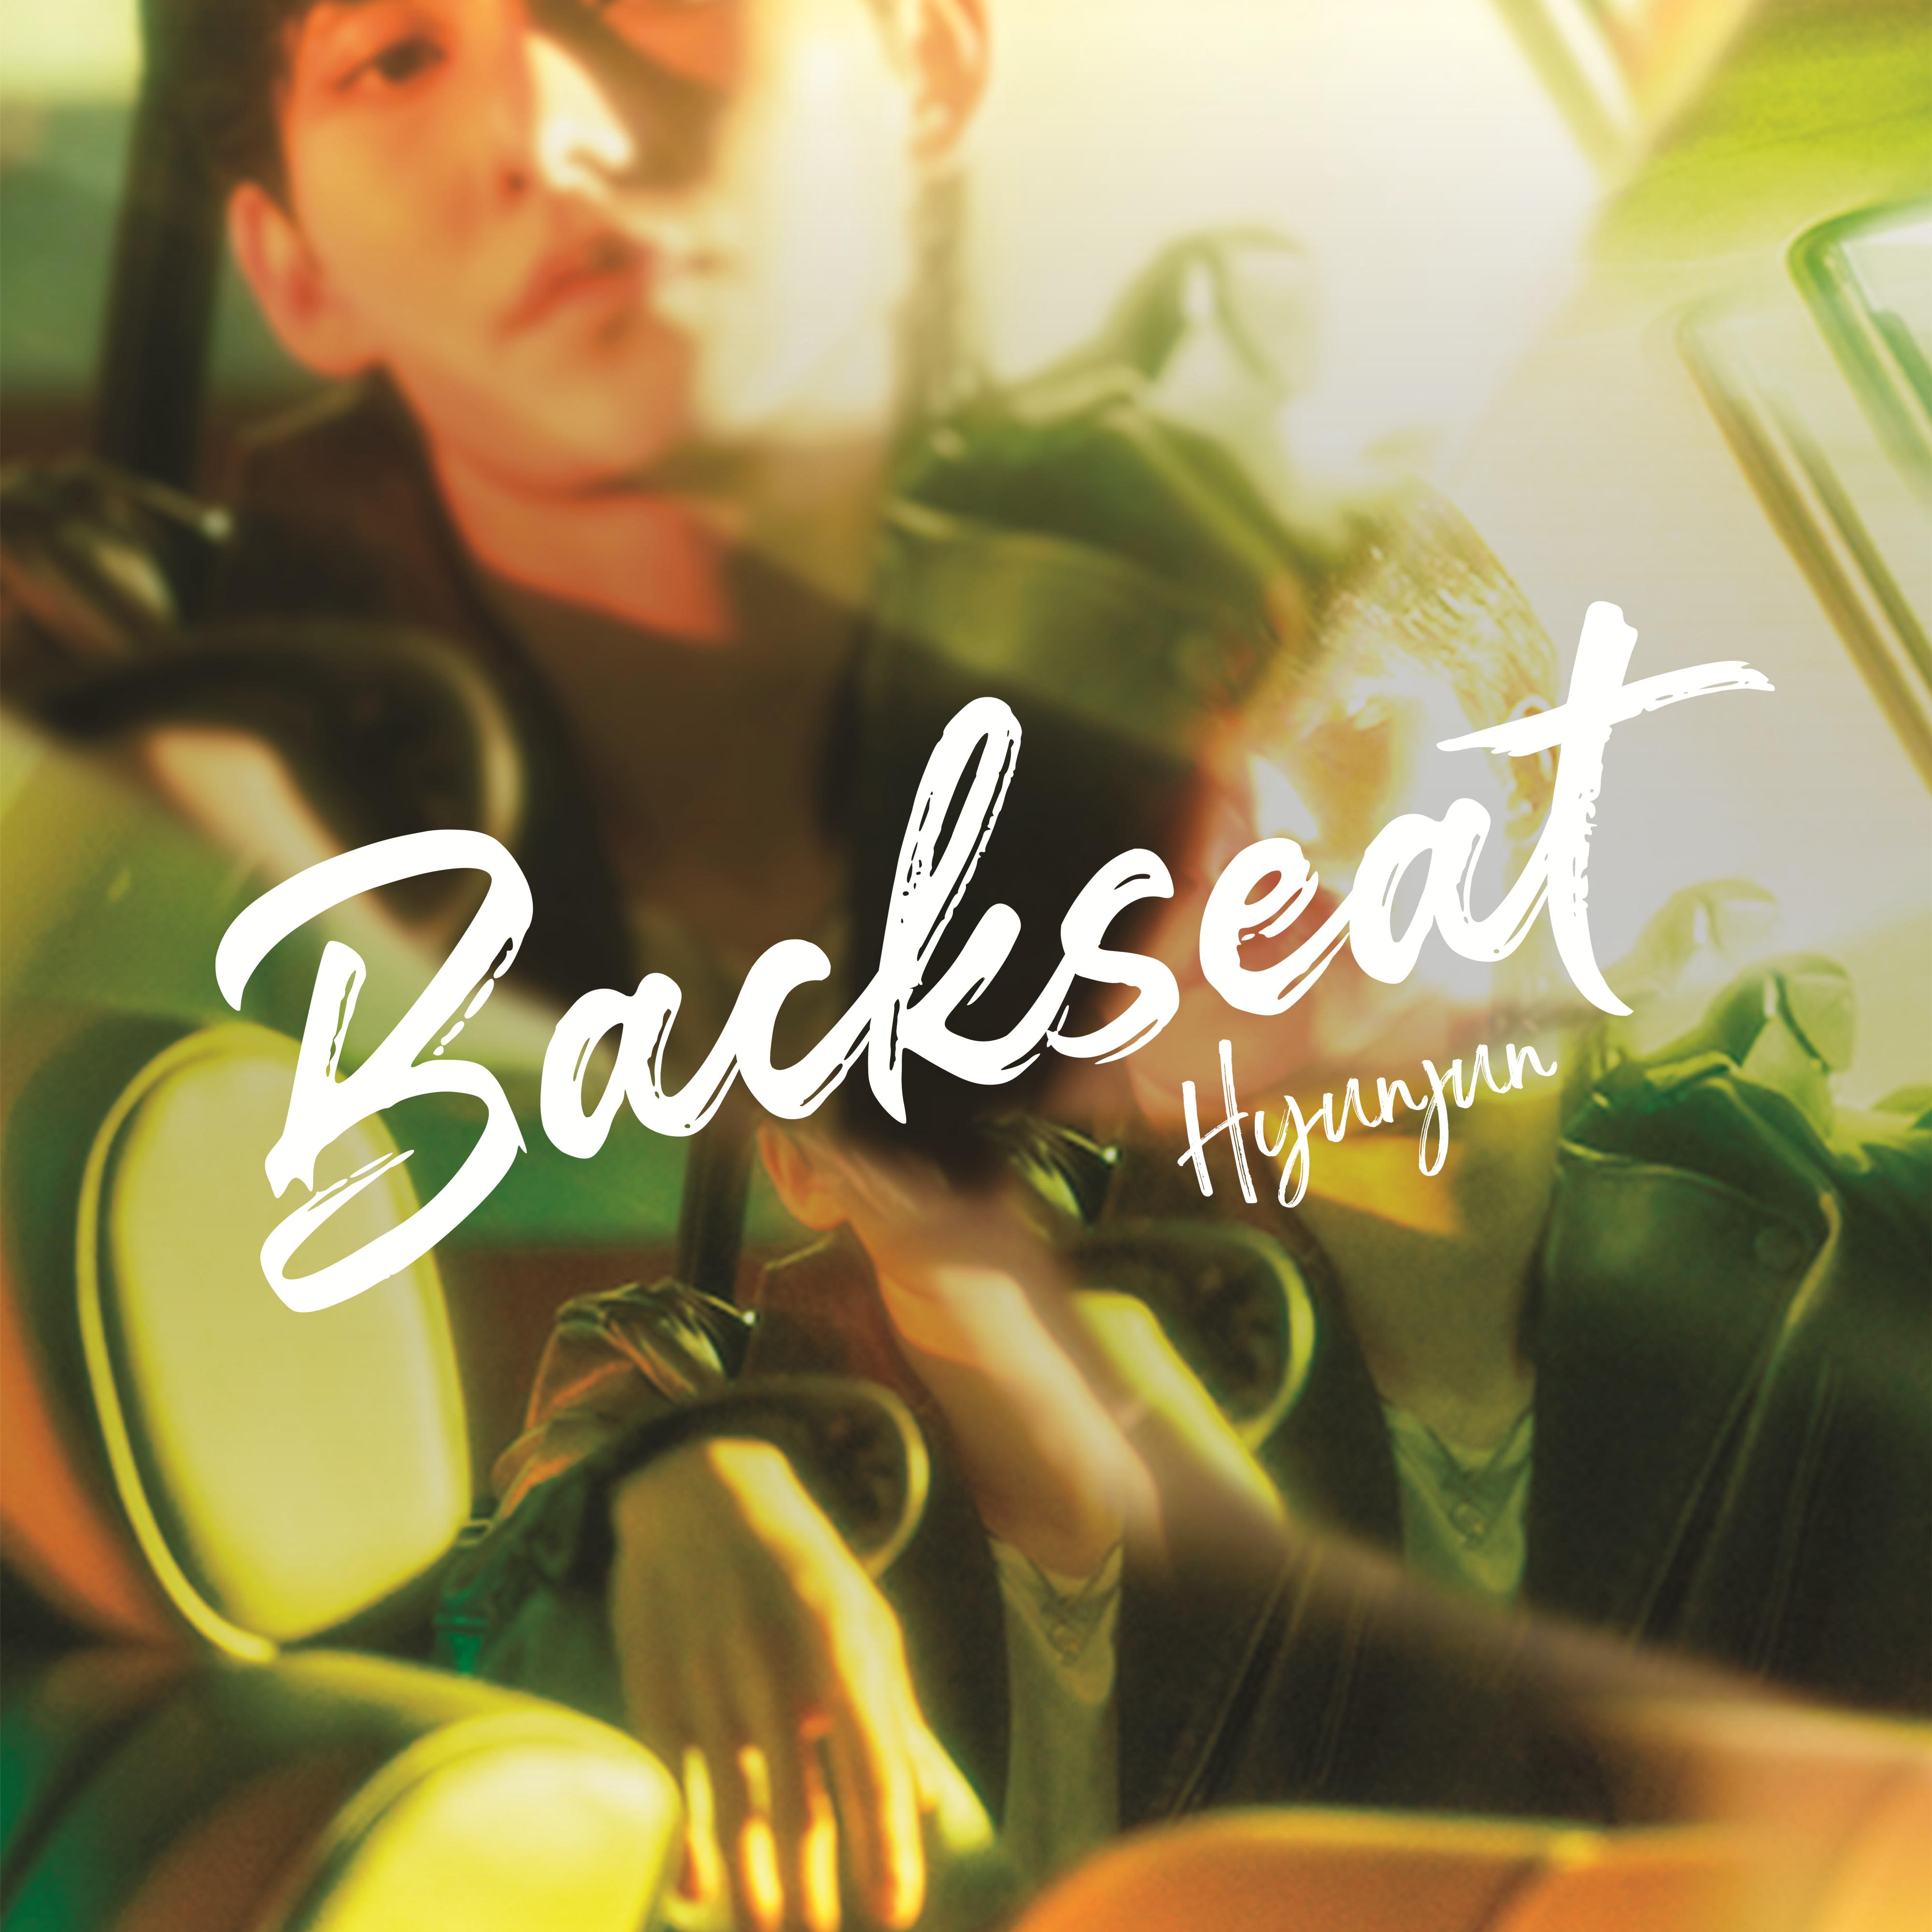 Backseat专辑